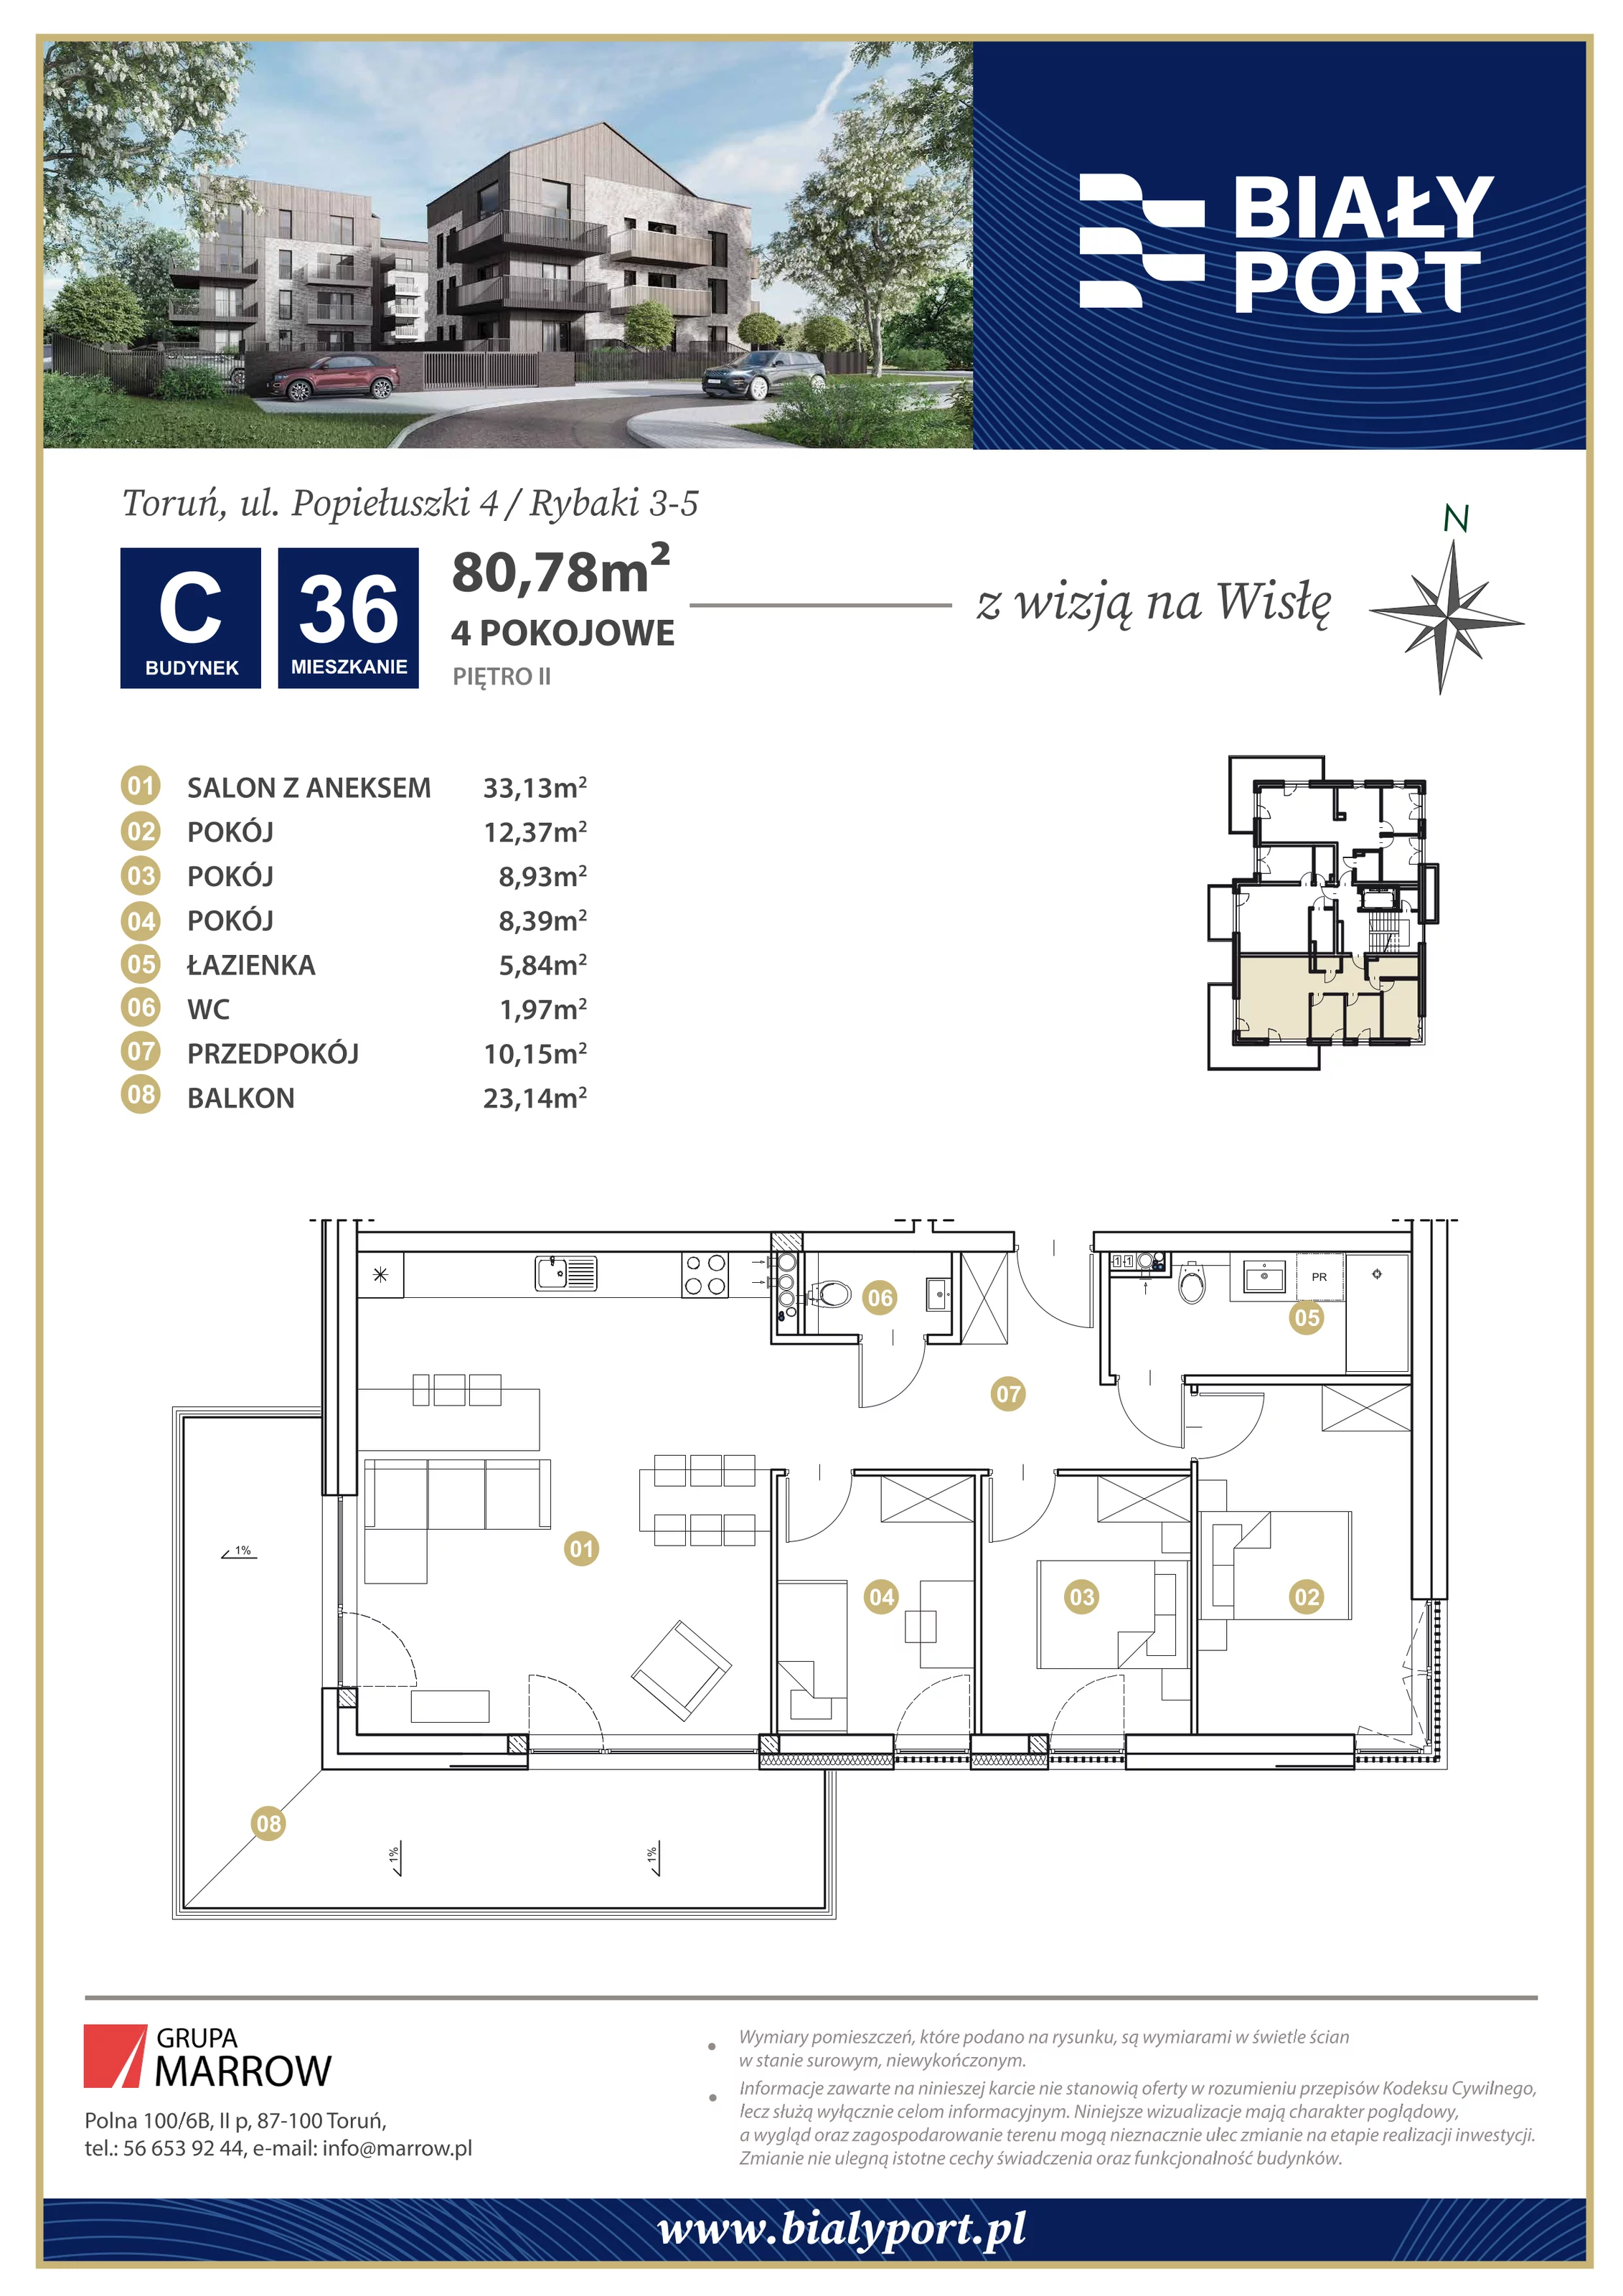 Mieszkanie 80,78 m², piętro 2, oferta nr 36, Biały Port, Toruń, Rybaki, ul. Popiełuszki 4